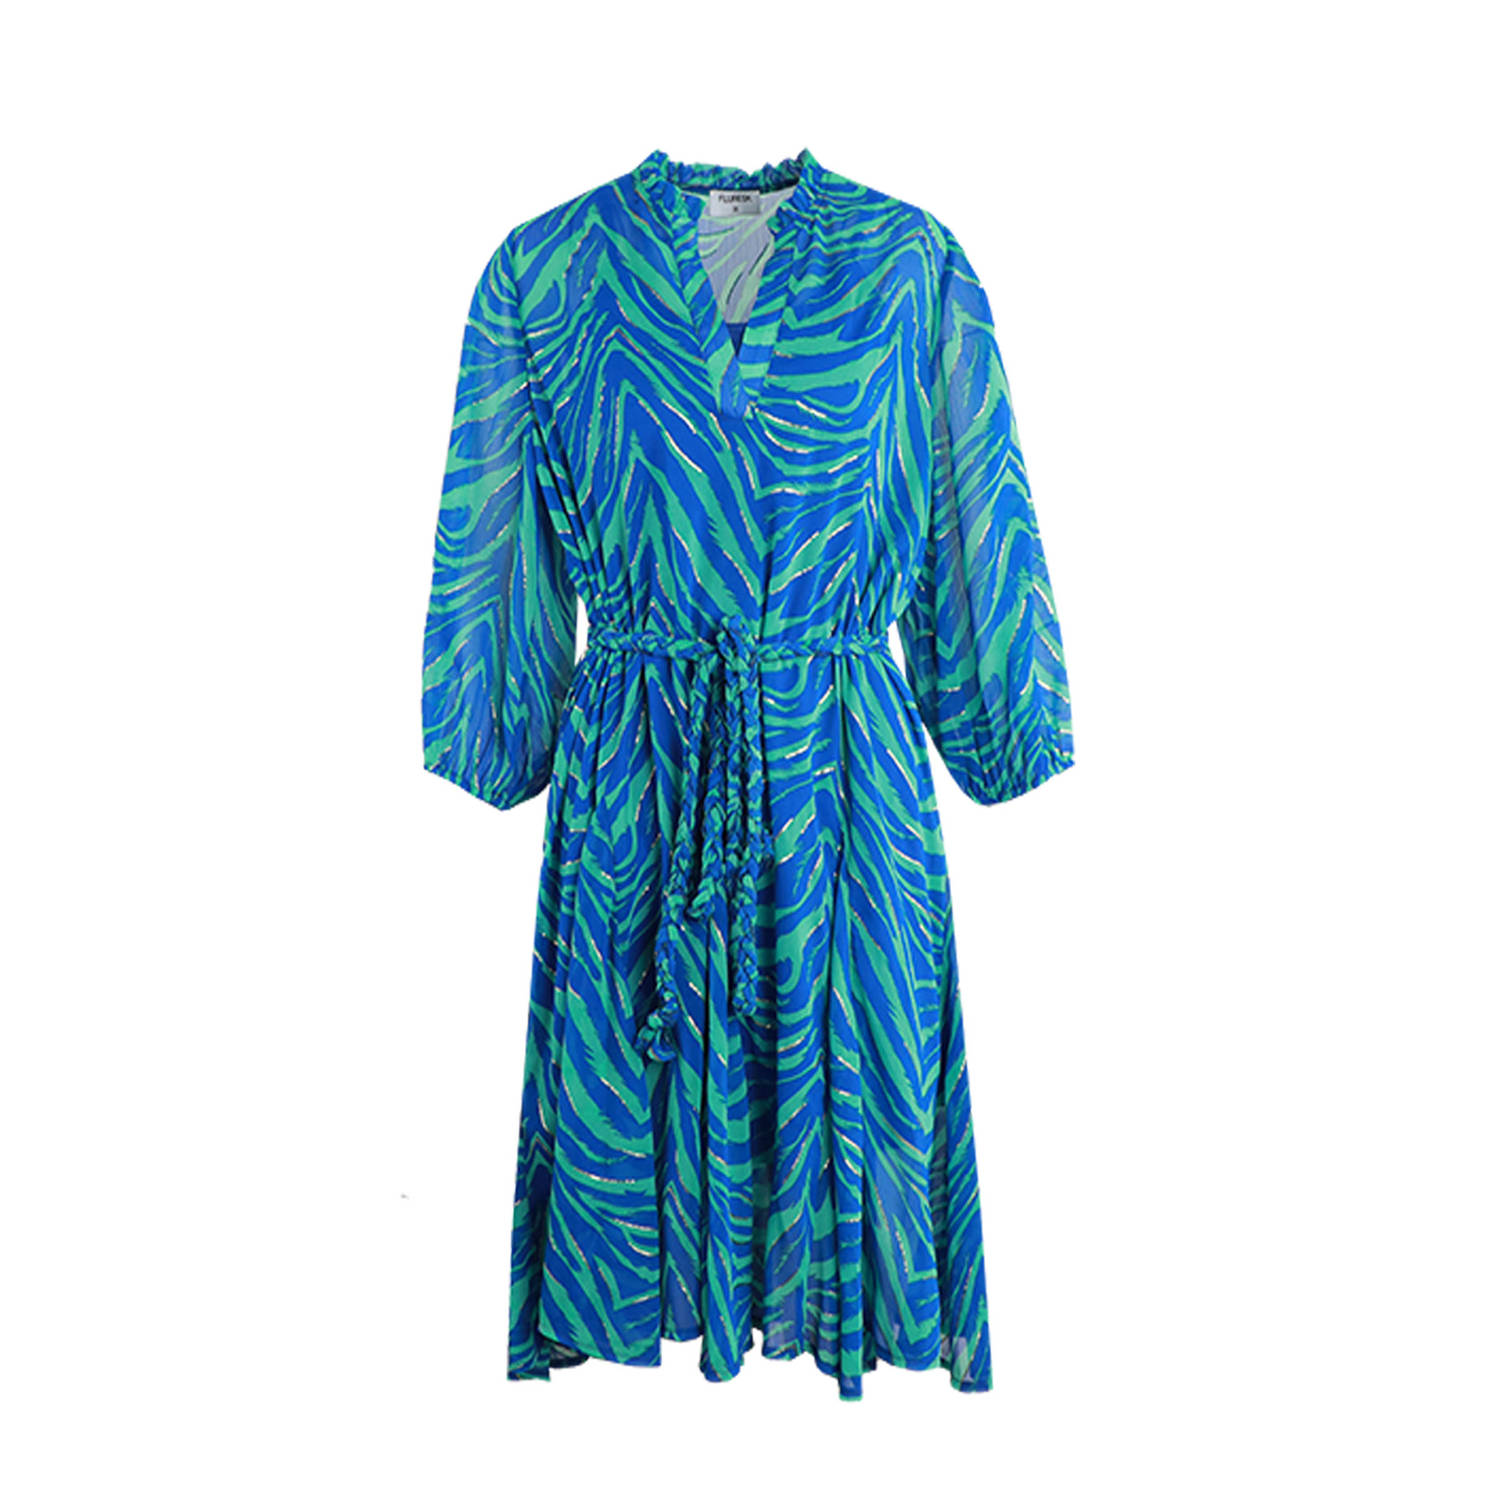 FLURESK semi-transparante jurk Millie met dierenprint en ceintuur blauw groen